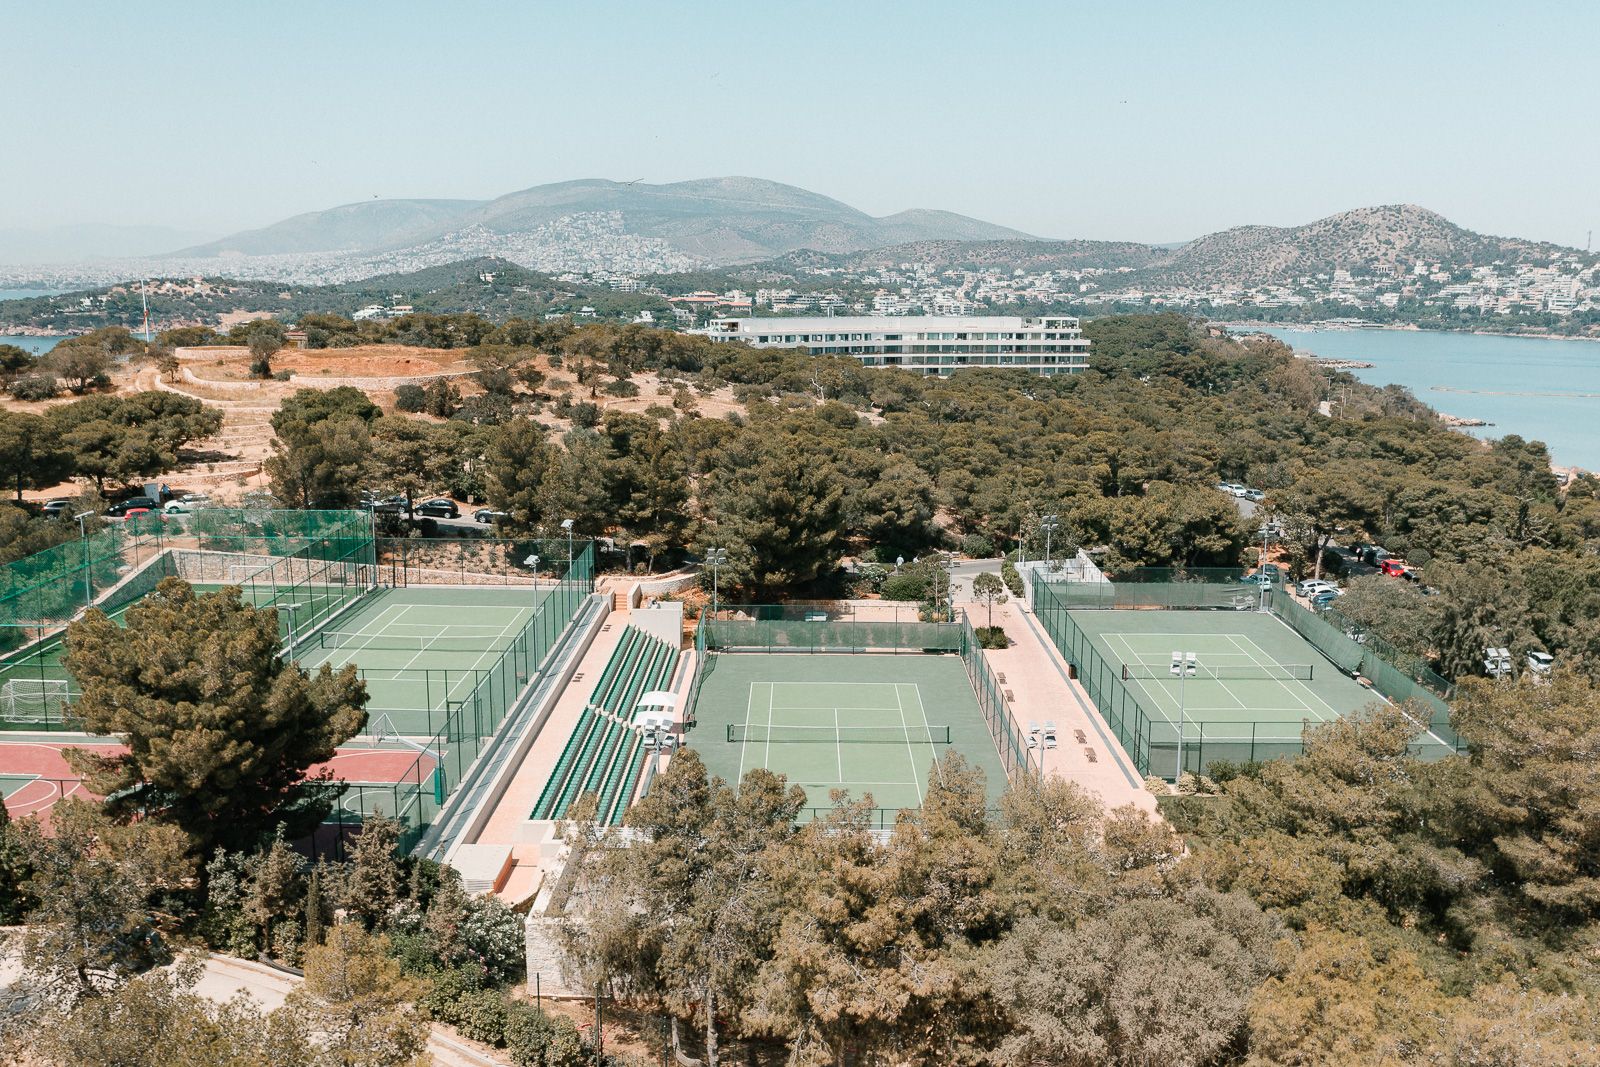 Καλοκαιρινά μαθήματα τένις για όλους στο Four Seasons Astir Palace Hotel Athens